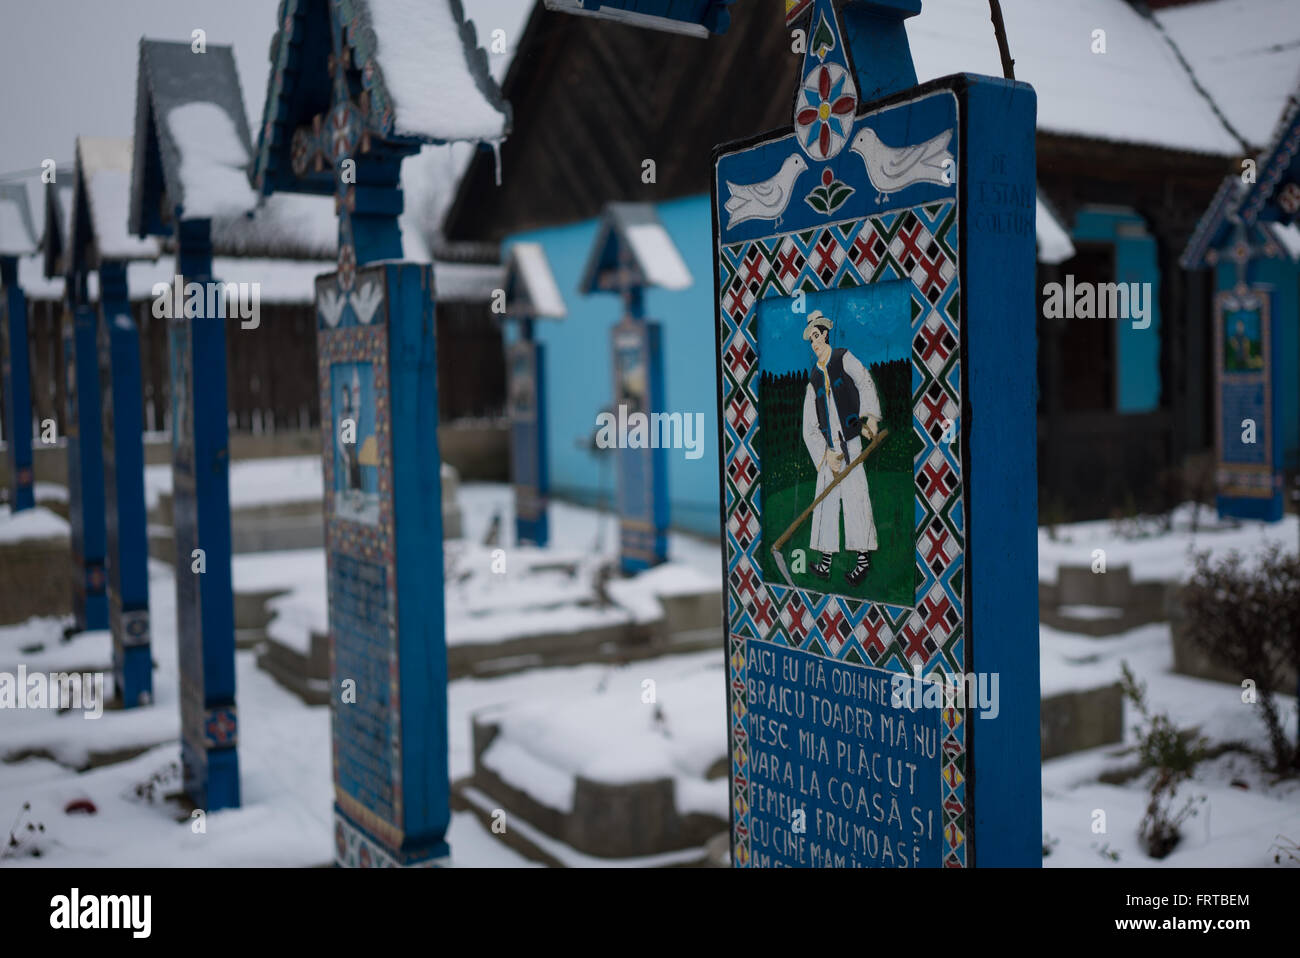 À l'intérieur du cimetière de la Roumanie où les gens sont heureux de rappeler avec humour et heureux d'au revoir. Banque D'Images